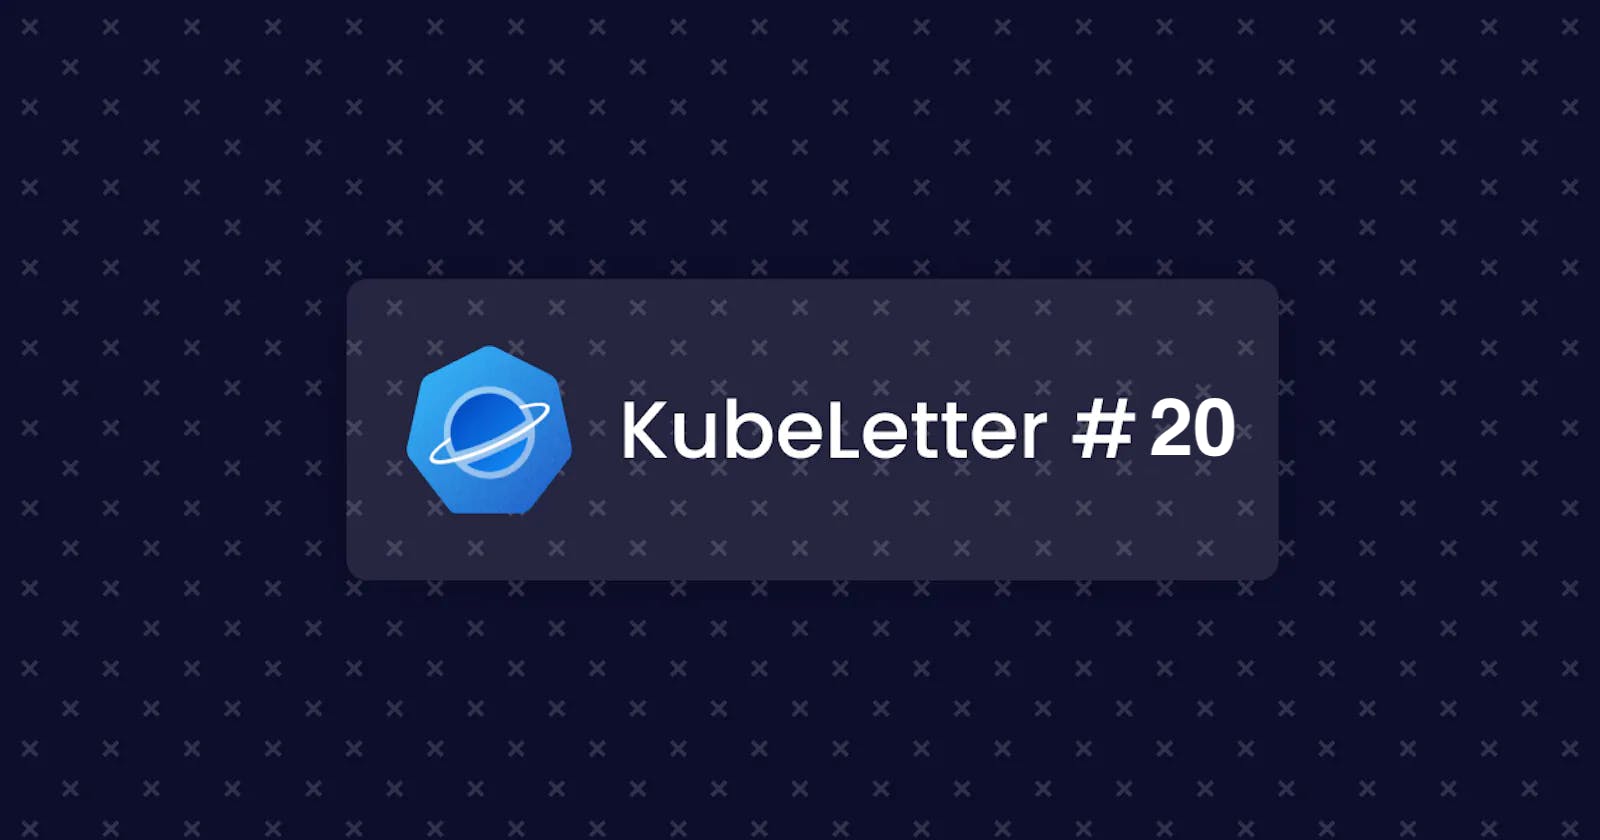 KubeLetter #20